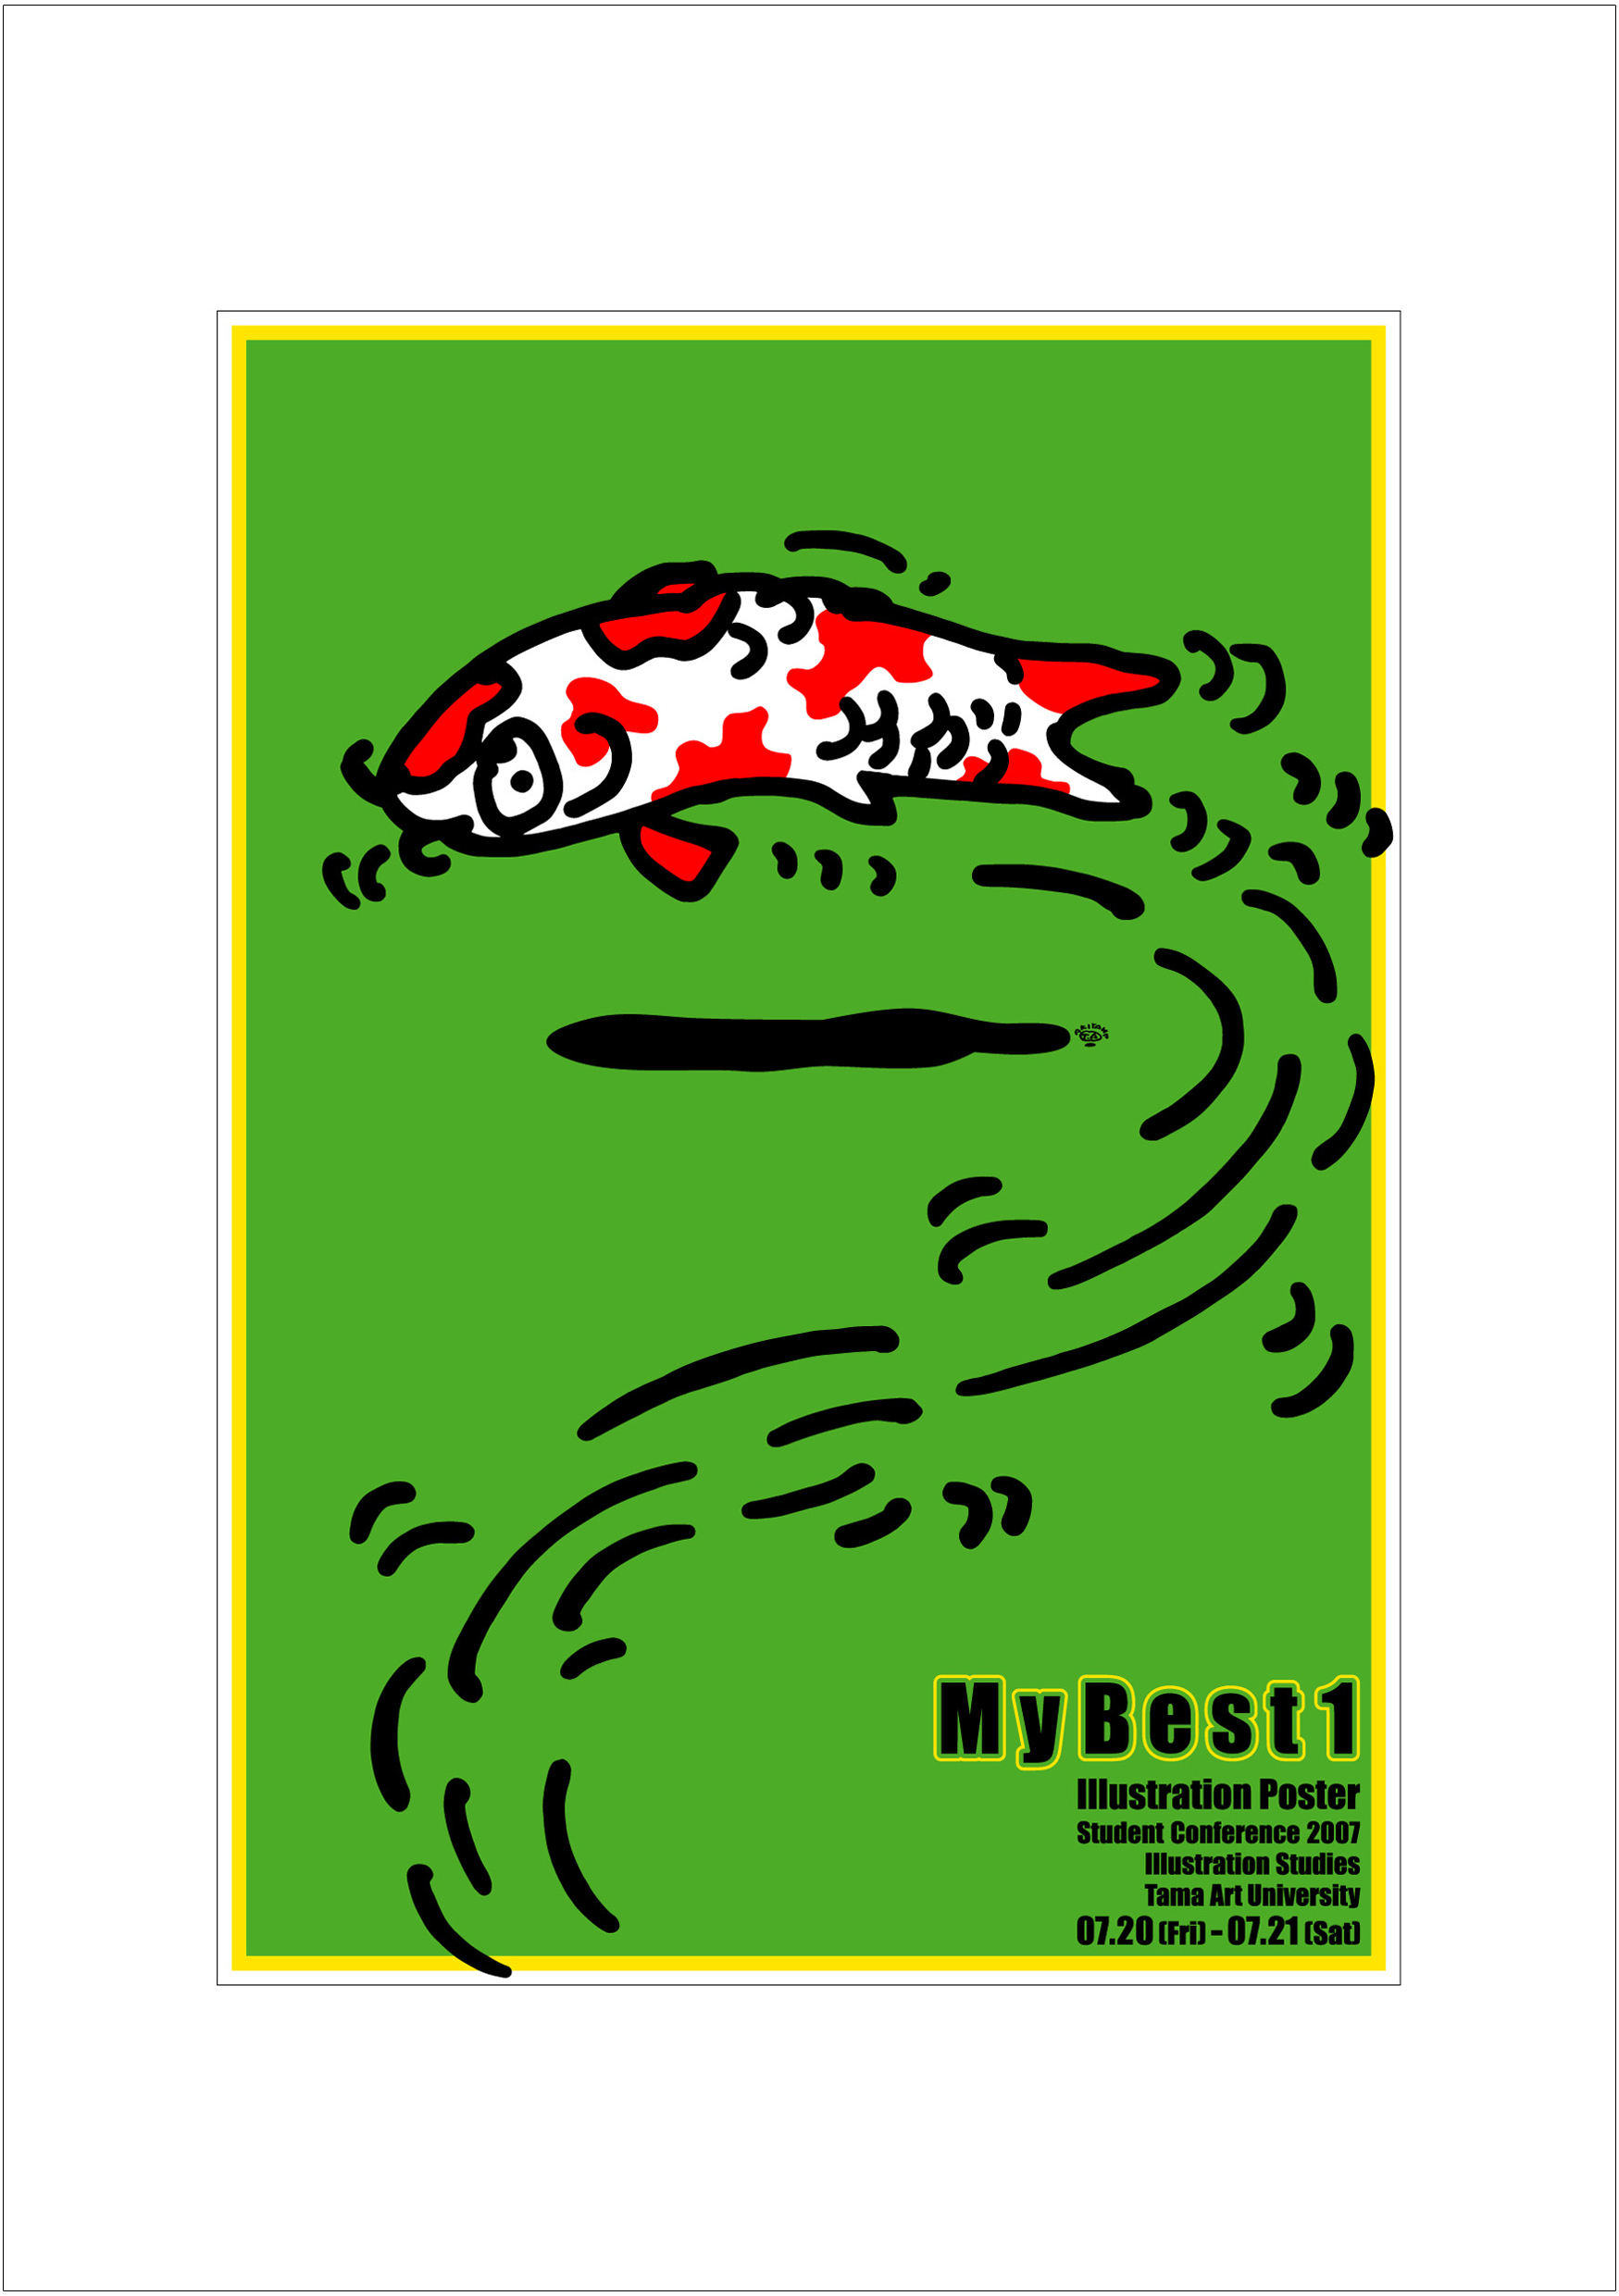 ポスターアーティスト秋山孝が2007年に制作したアートカード「アートカード ポスター 2007 08」